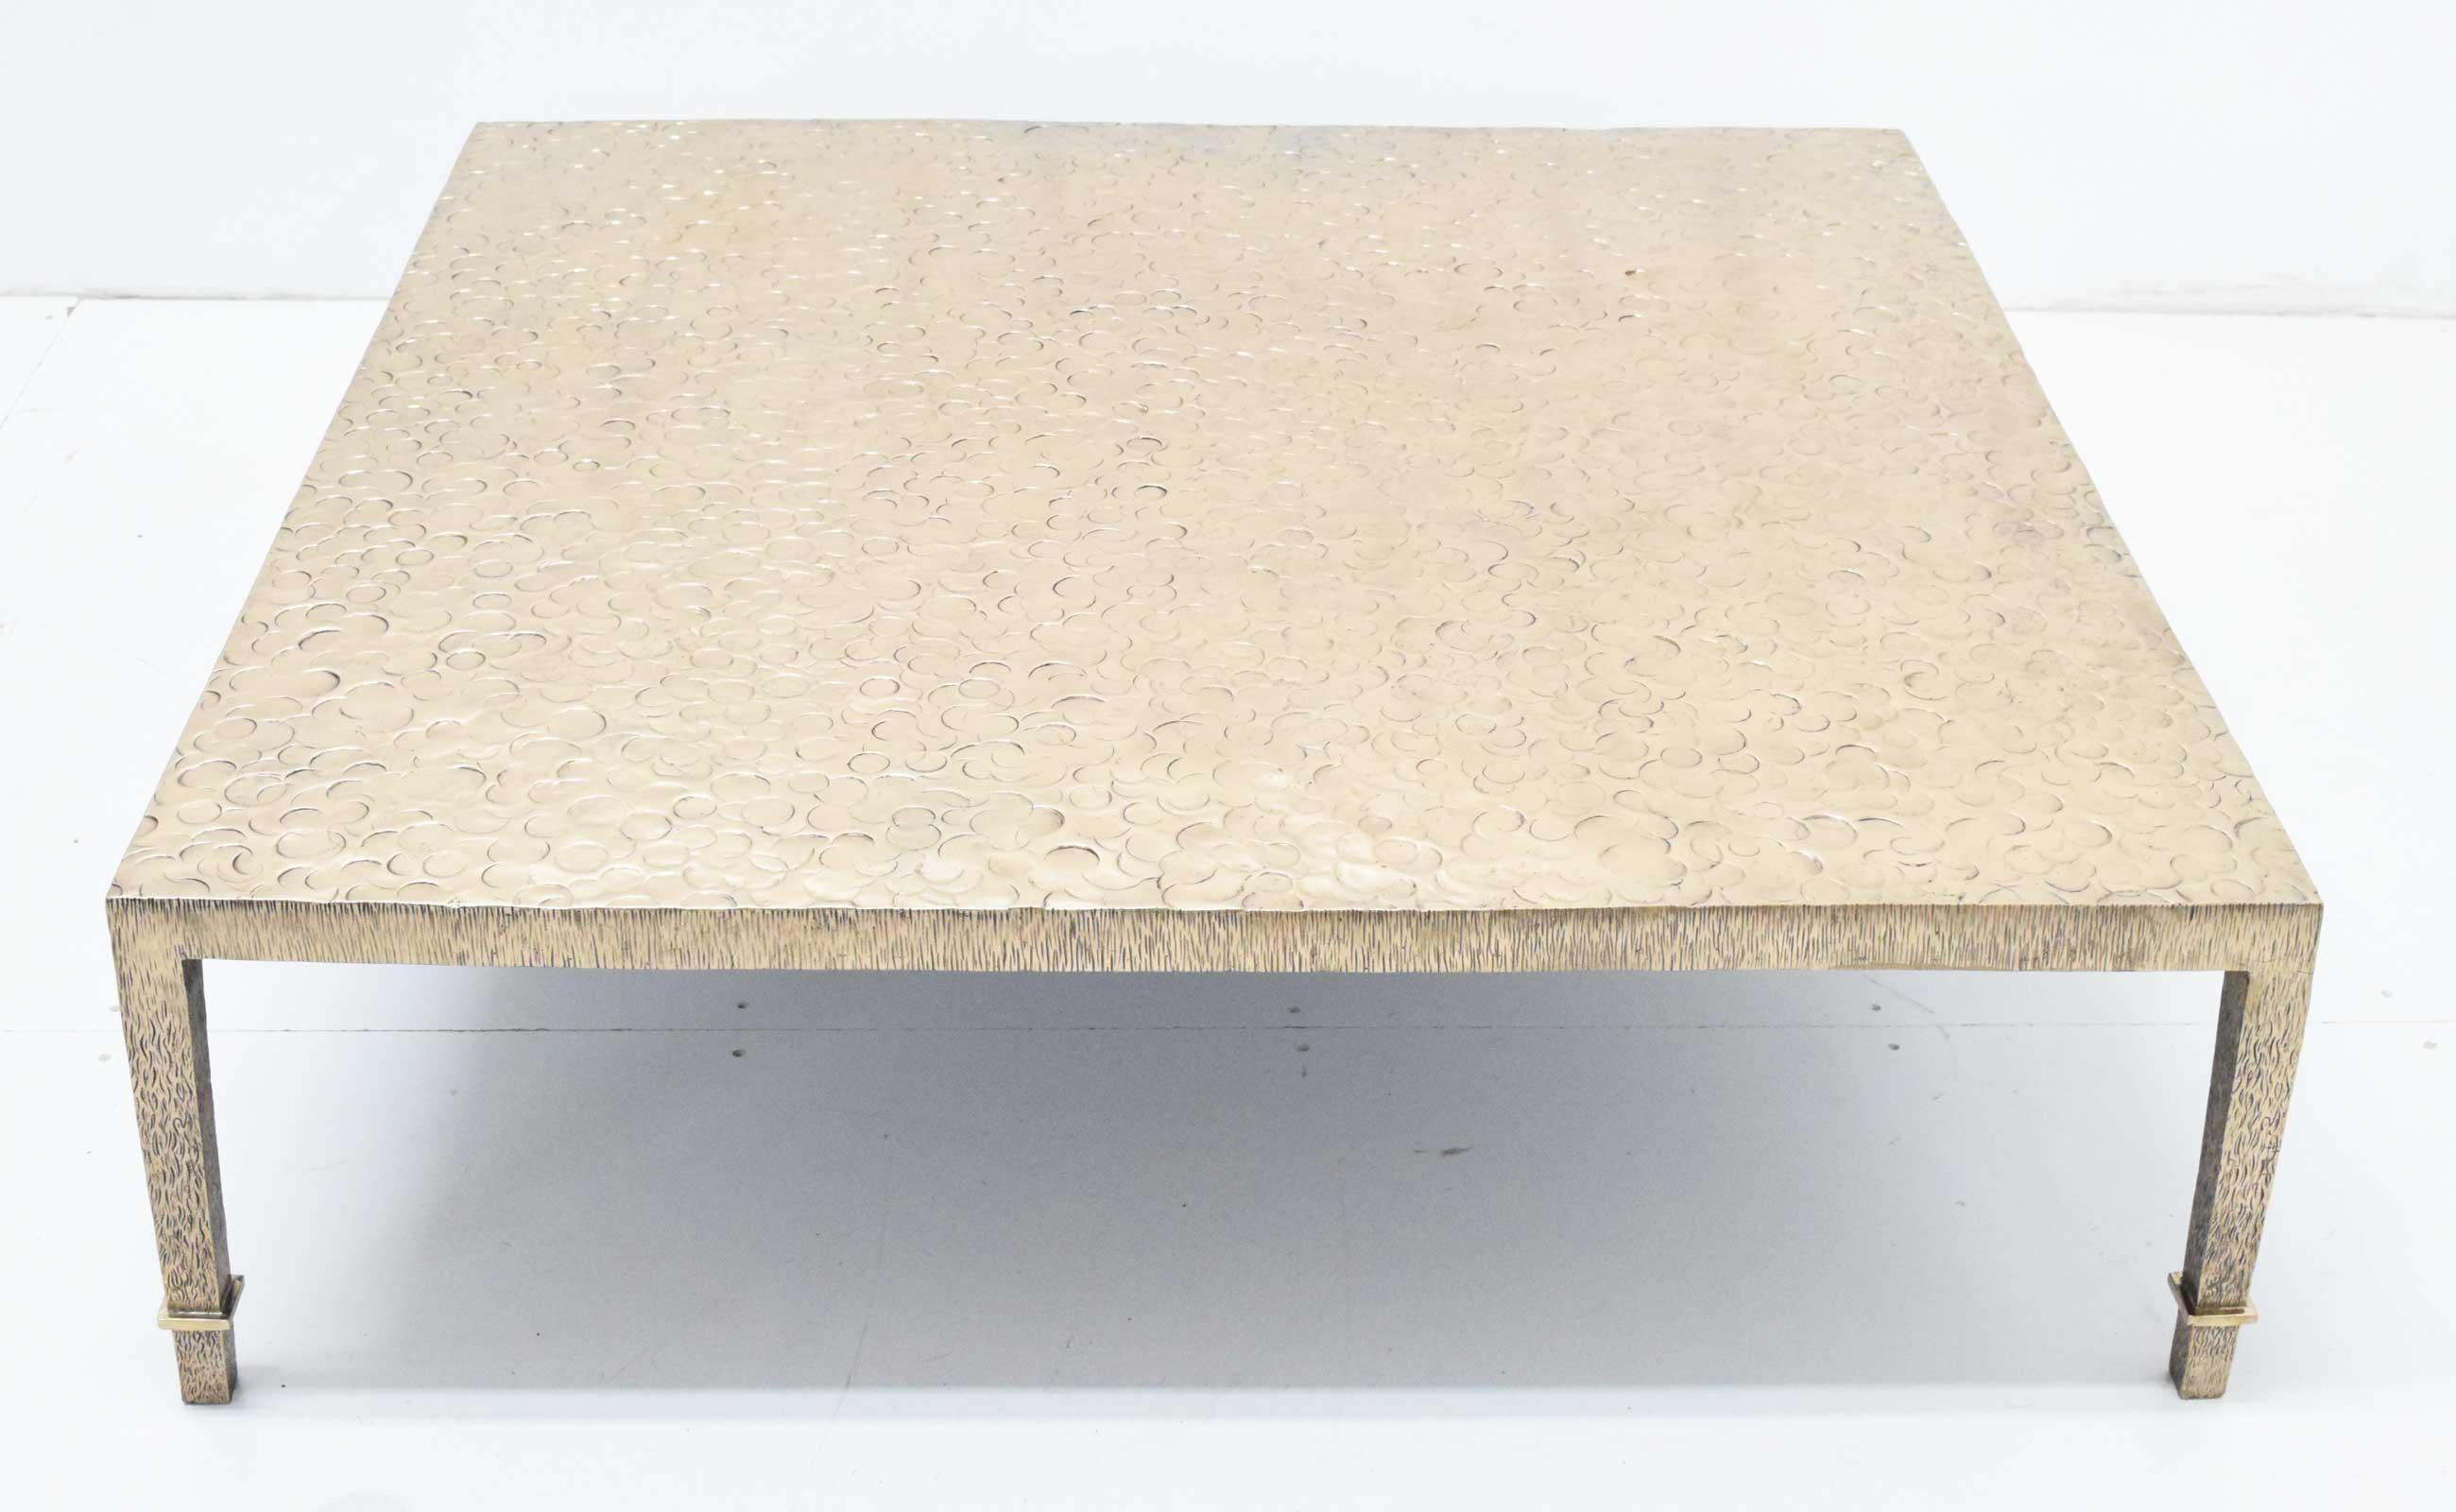 Wunderschön gestaltet und ausgeführt. Der Tisch ist aus massiver Bronze und hat eine polierte Platte und Seite. Die Platte zeigt Kreise in einem abstrakten Muster, die Beine sind geätzt. Der Tisch ist sehr schwer und wiegt etwa 500 Pfund. Äußerst